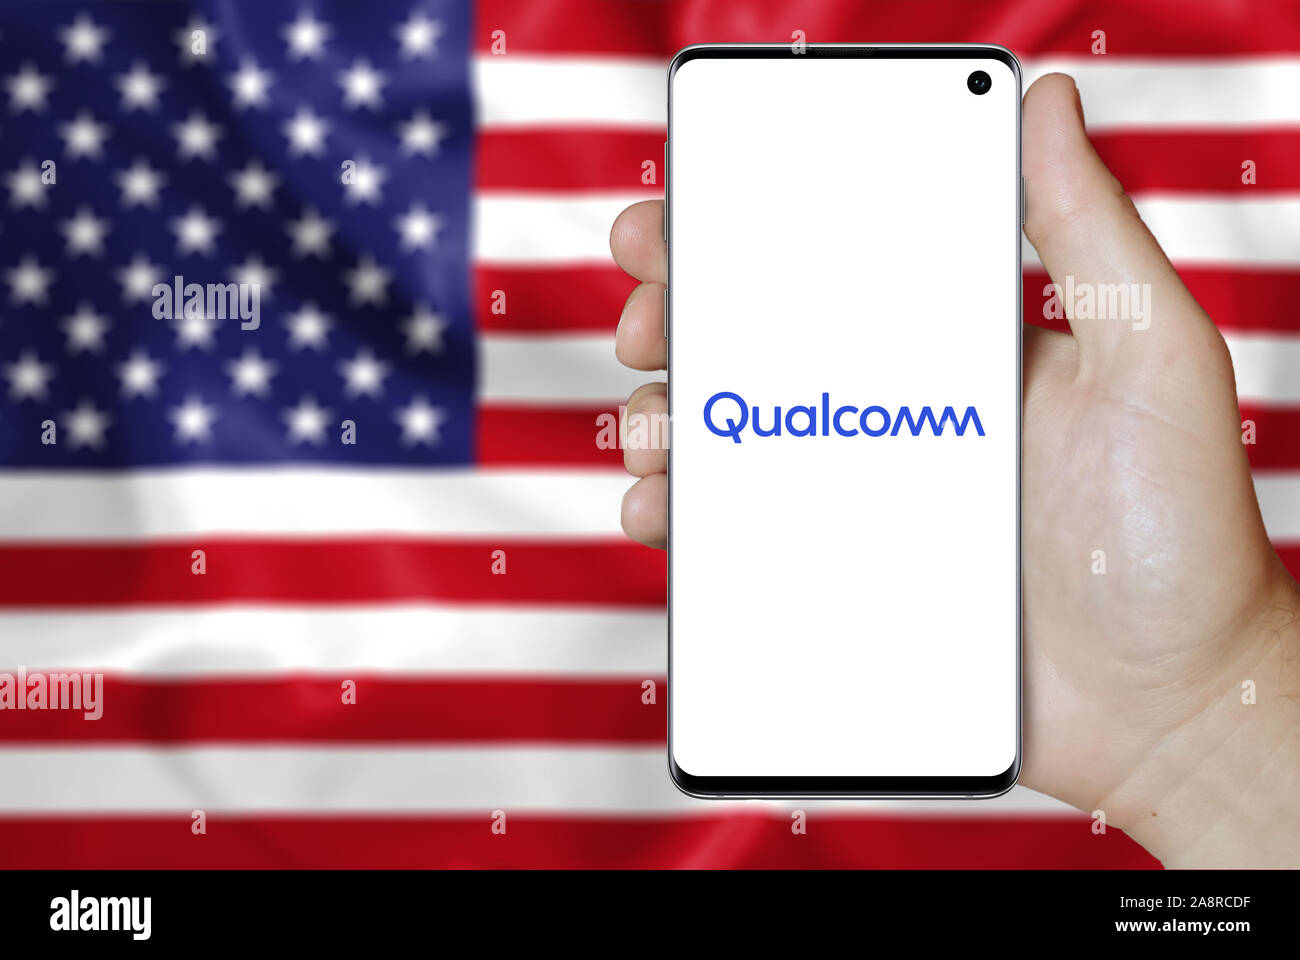 Il logo della società pubblica Qualcomm Inc. visualizzata su uno smartphone. Bandiera degli Stati Uniti sullo sfondo. Credito: PIXDUCE Foto Stock